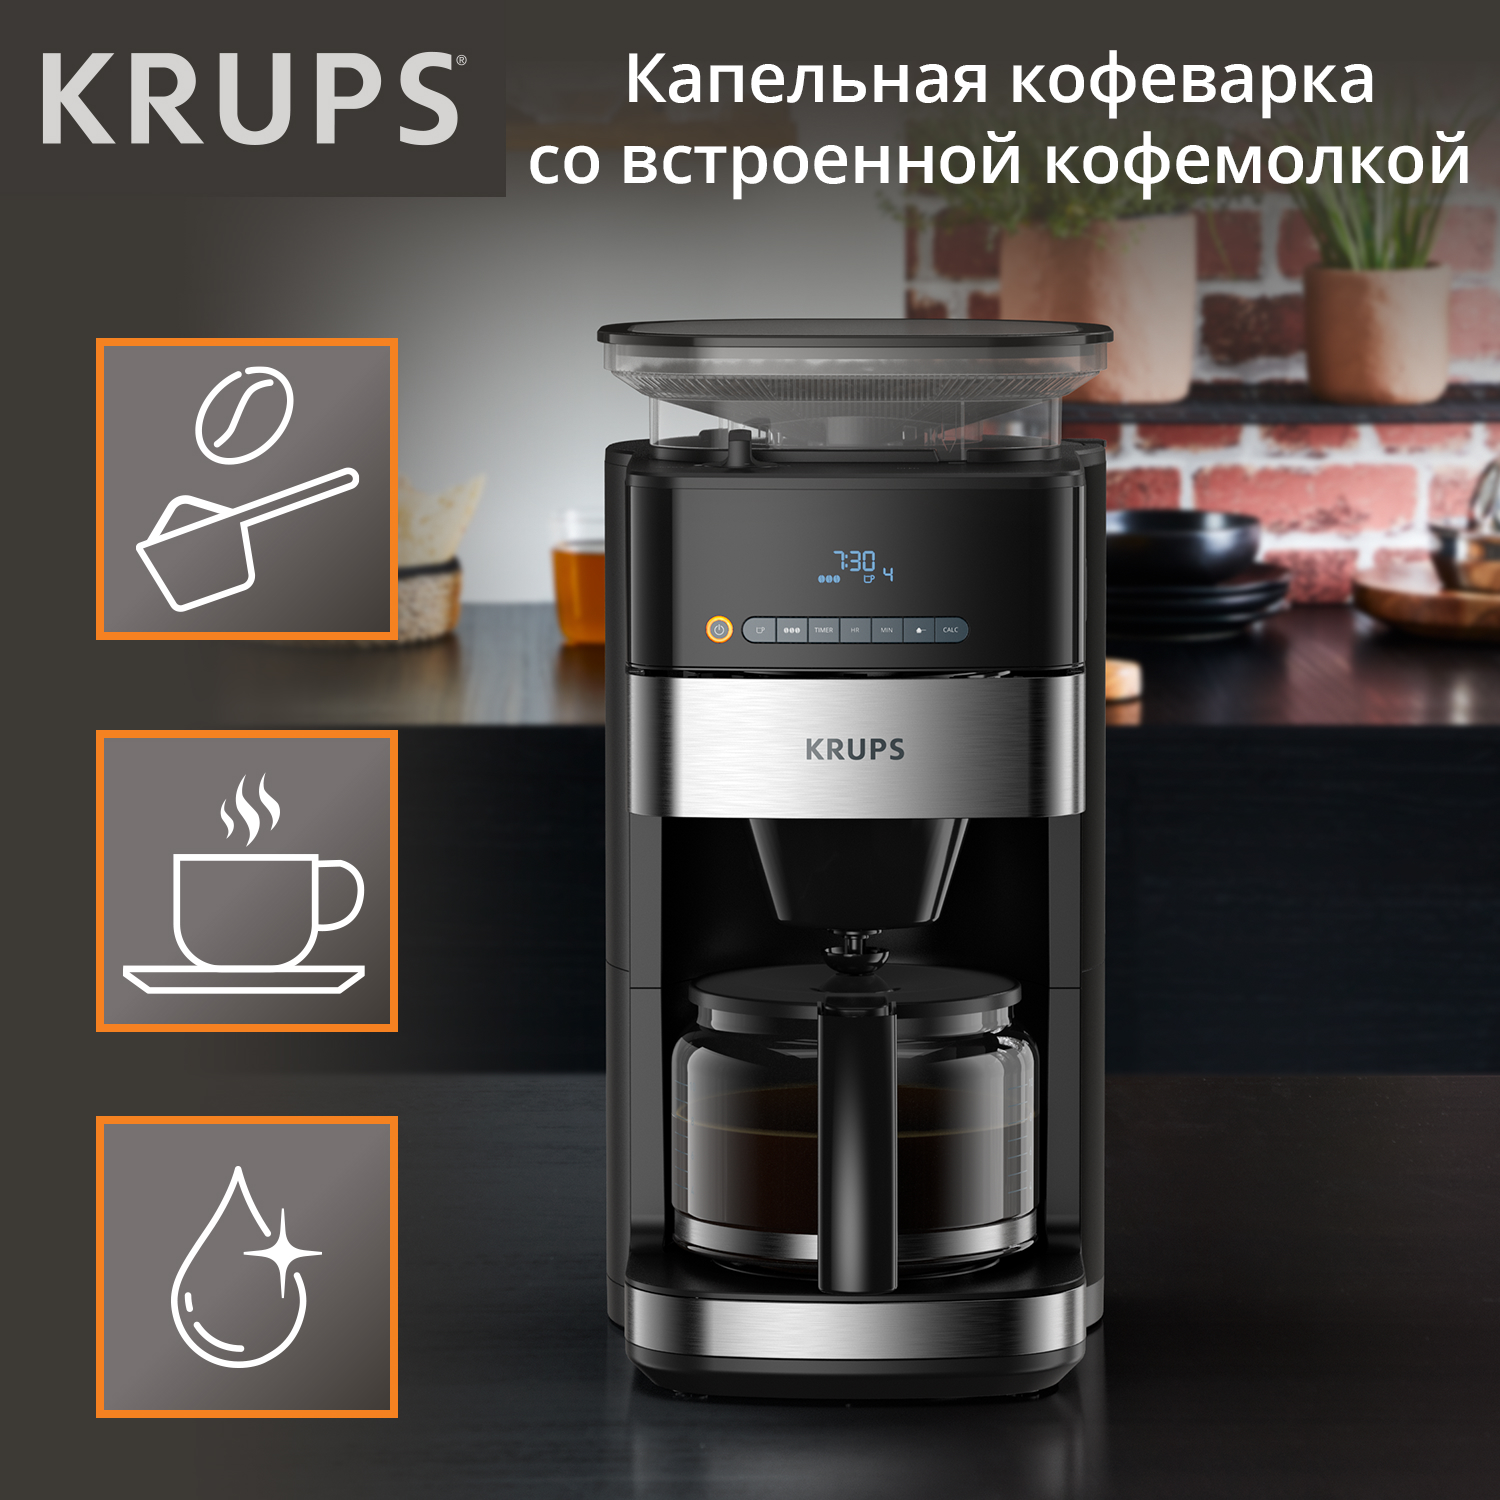 Кофеварка капельного типа Krups Grind Aroma KM832810 с кофемолкой, черный/серебристый капельная кофеварка со встроенной кофемолкой bq cm7001 розовое золото